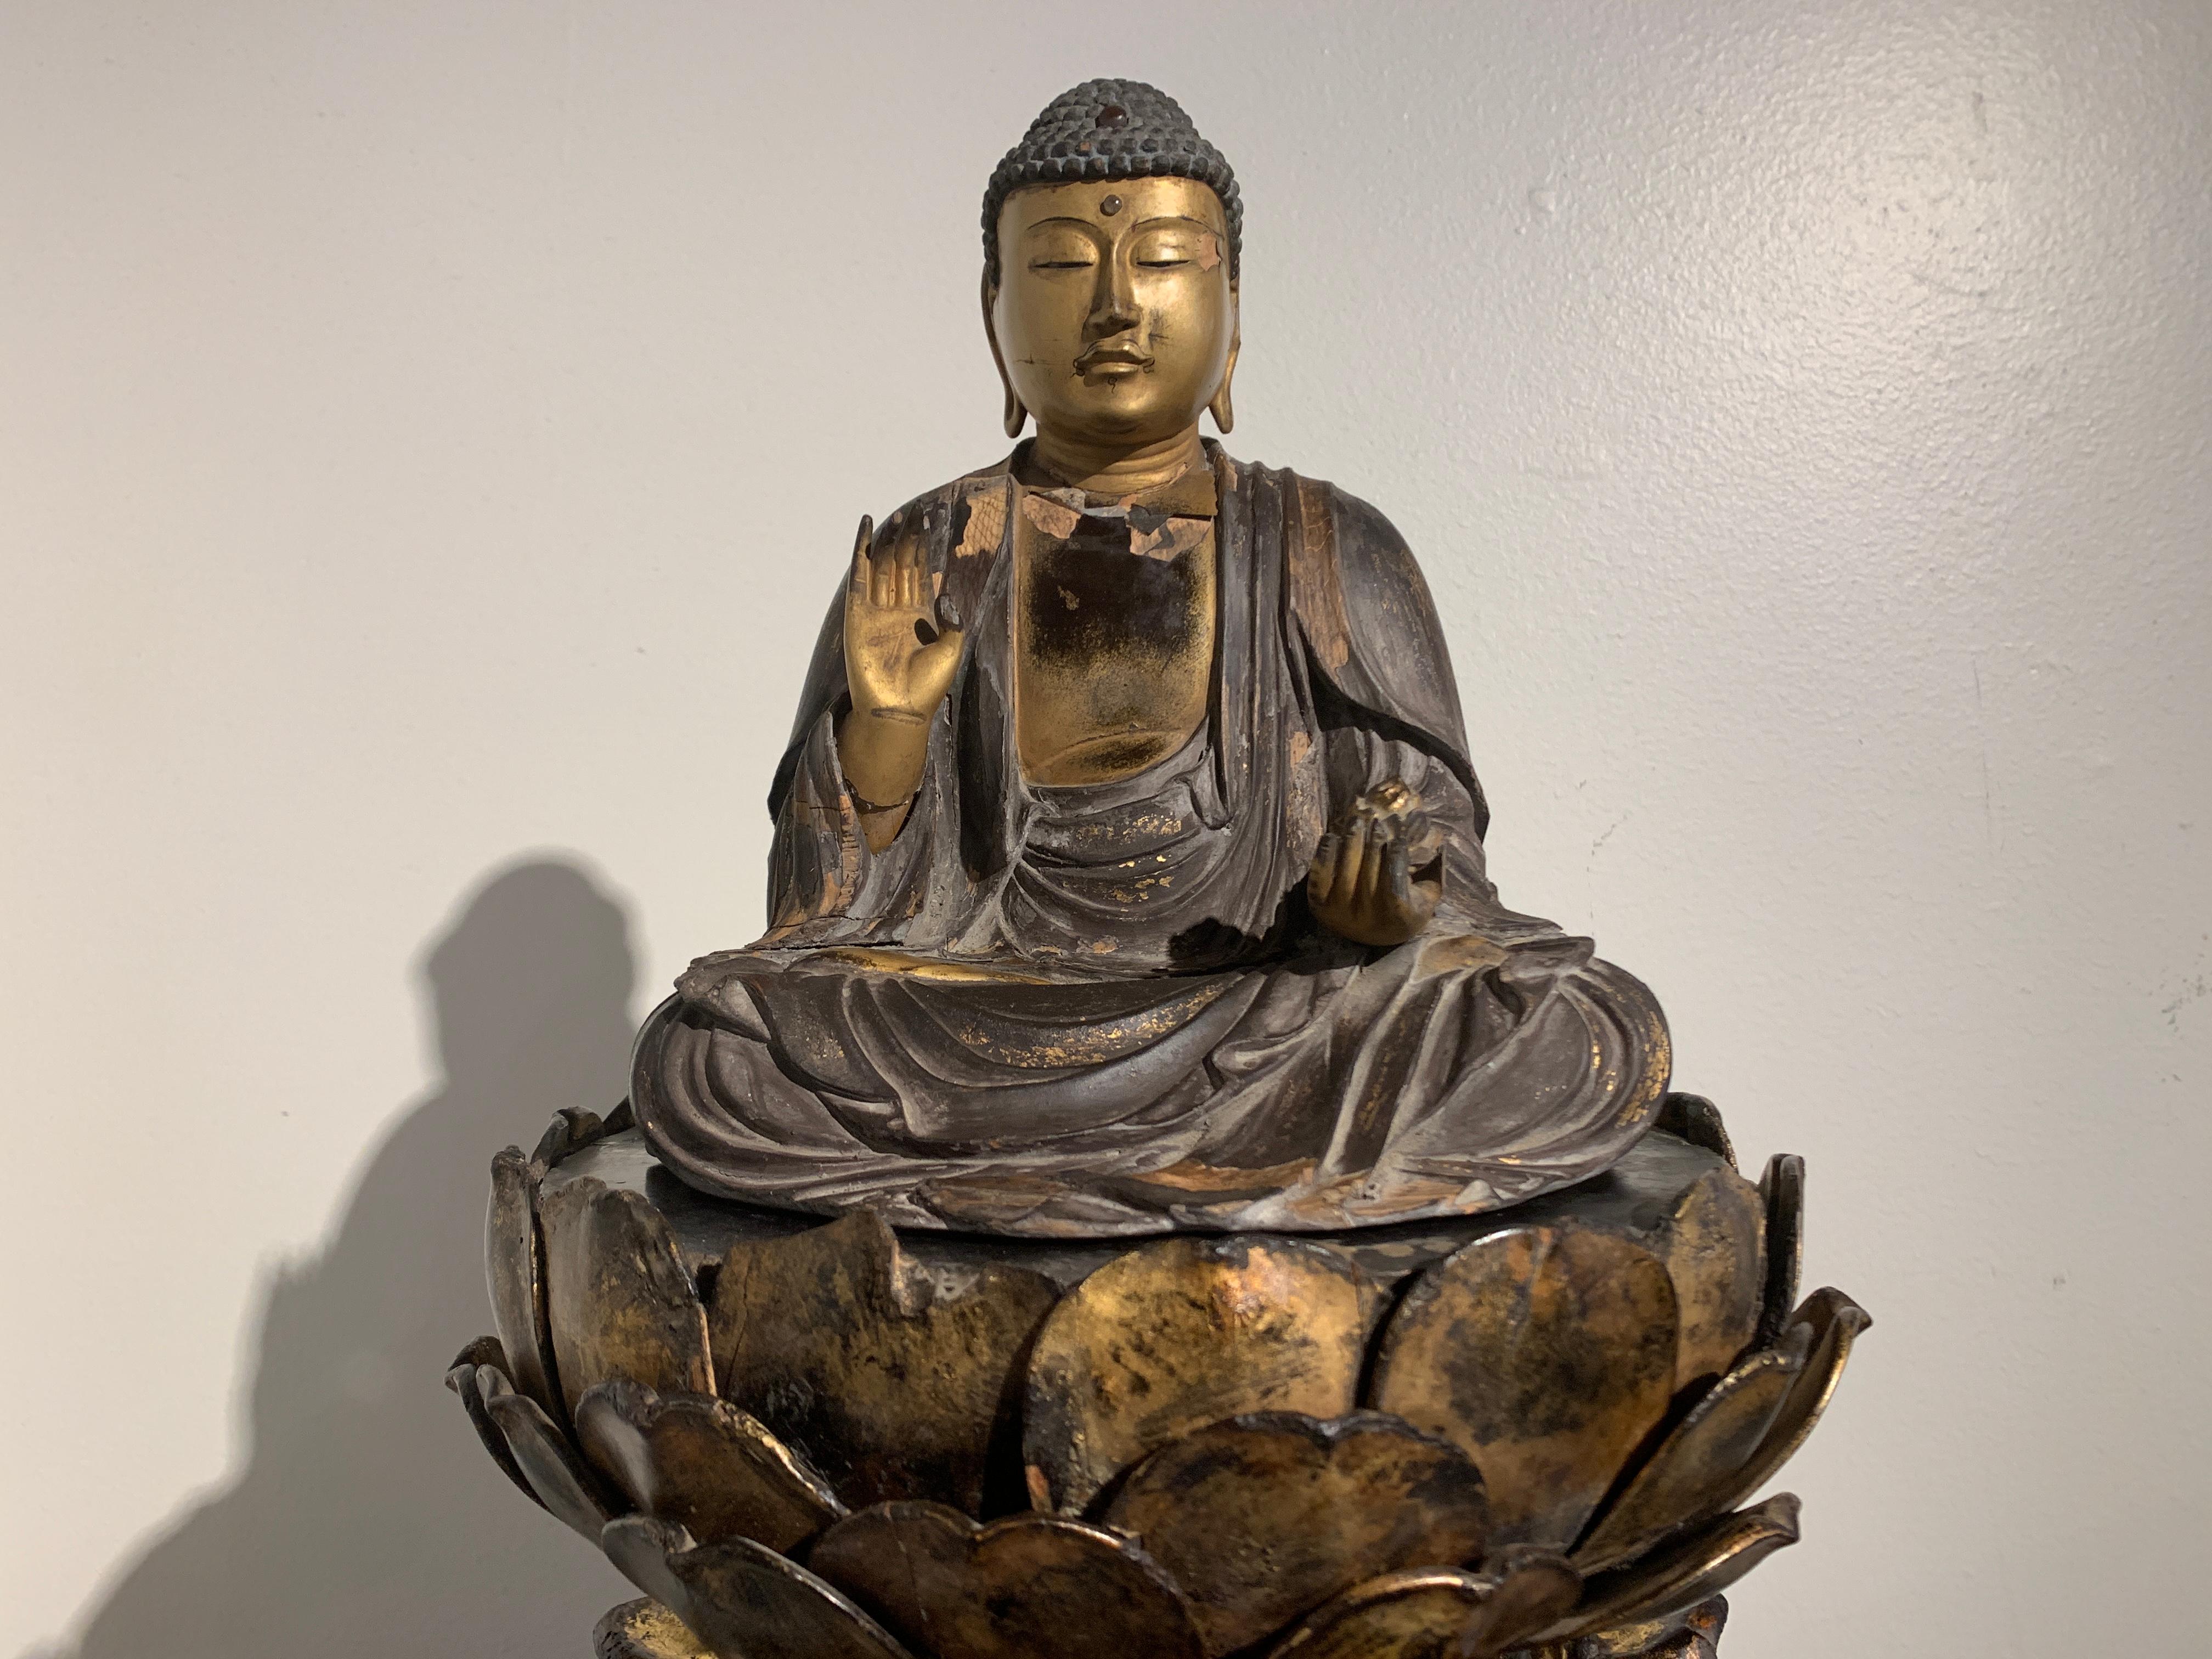 Remarquable figure japonaise en bois laqué et doré de la fin de la période Muromachi (1333-1573) représentant Yakushi Nyorai, le Bouddha de la Médecine, assis sur un piédestal en lotus ajouré et sculpté, Japon, milieu du XVIe siècle.

Le Bouddha de